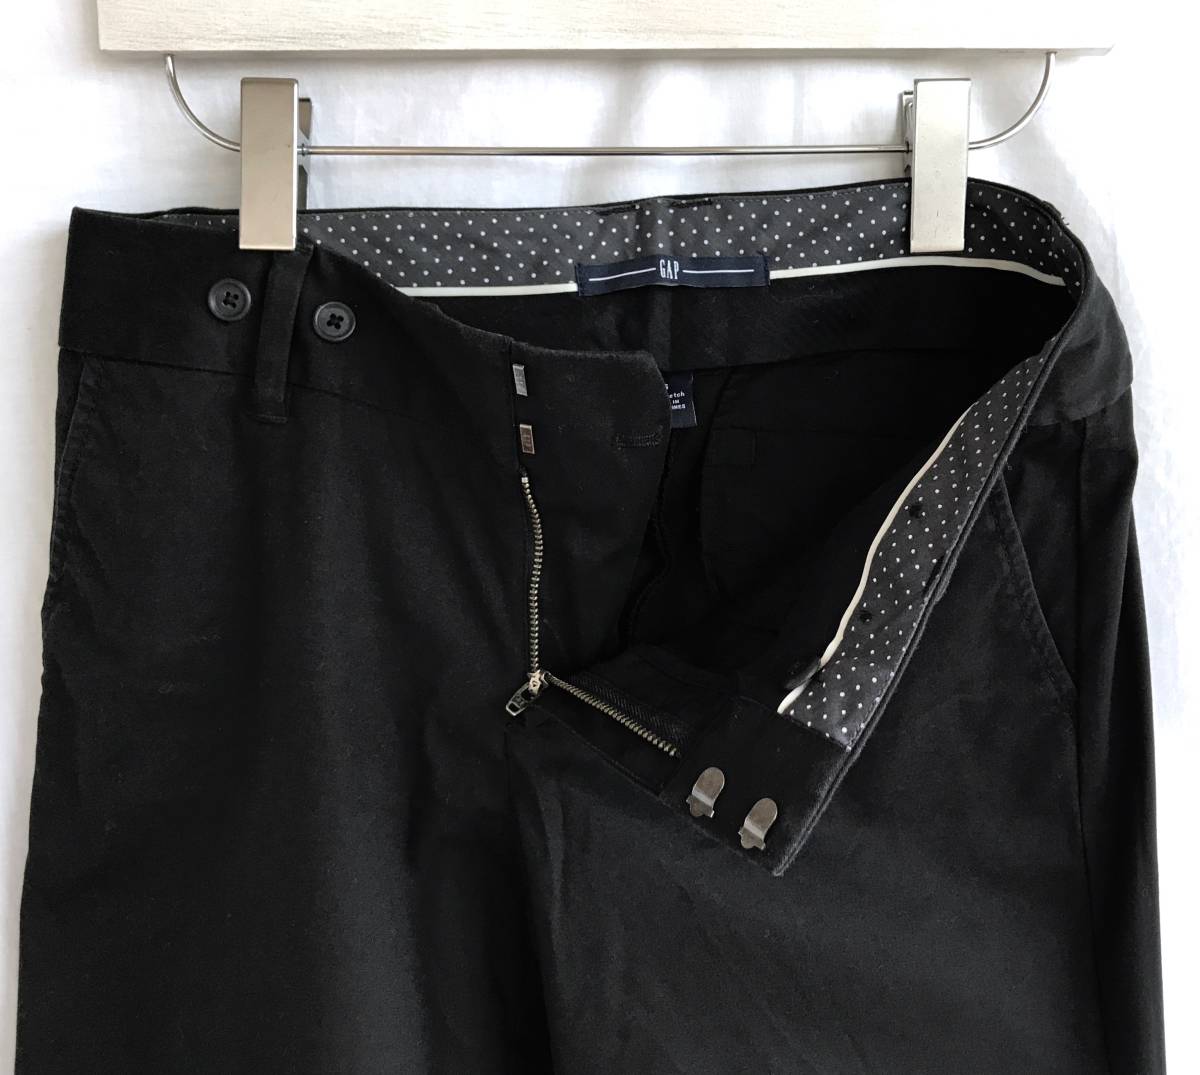  прекрасный товар Gap Gap укороченные брюки низ размер 6 чёрный стрейч двойной женский шорты шорты D304